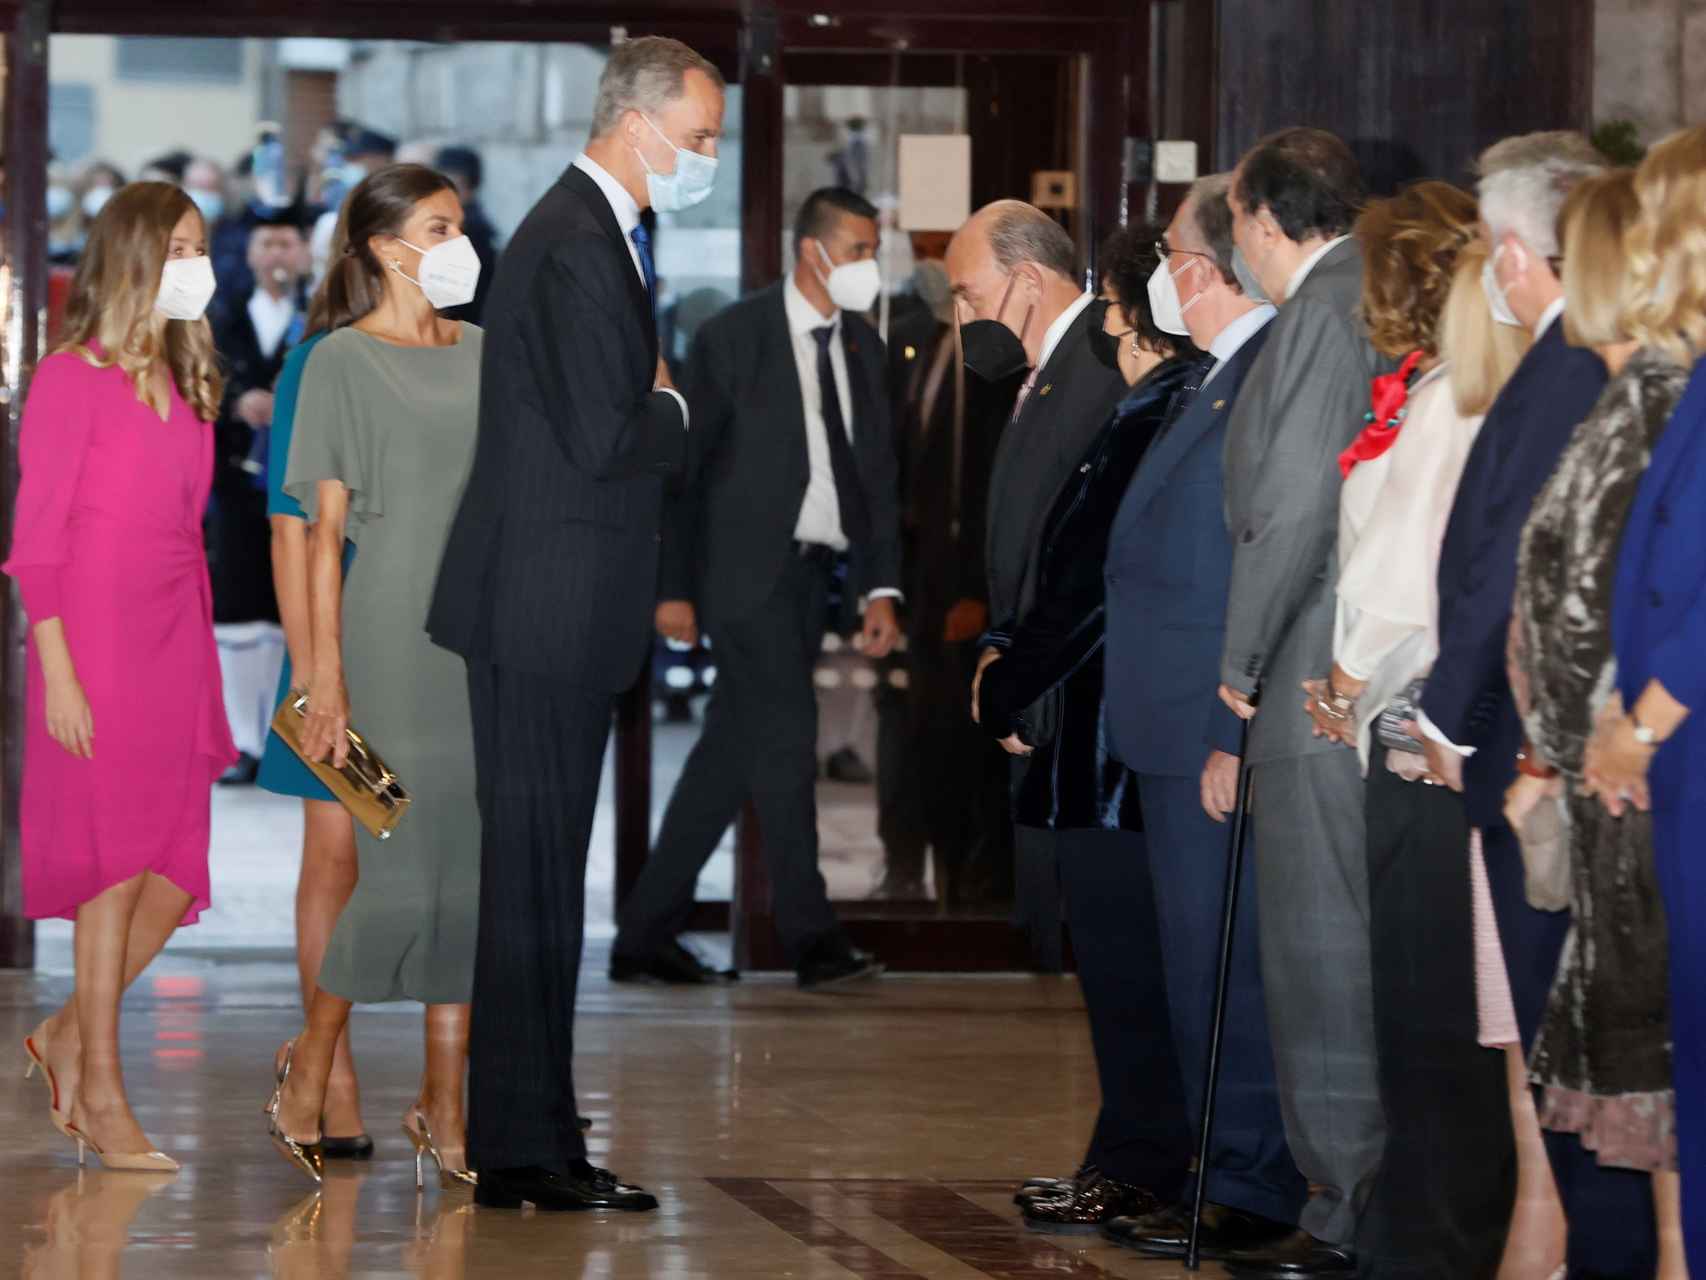 La Familia Real accediendo al Auditorio Palacio de Congresos Príncipe Felipe de Oviedo.